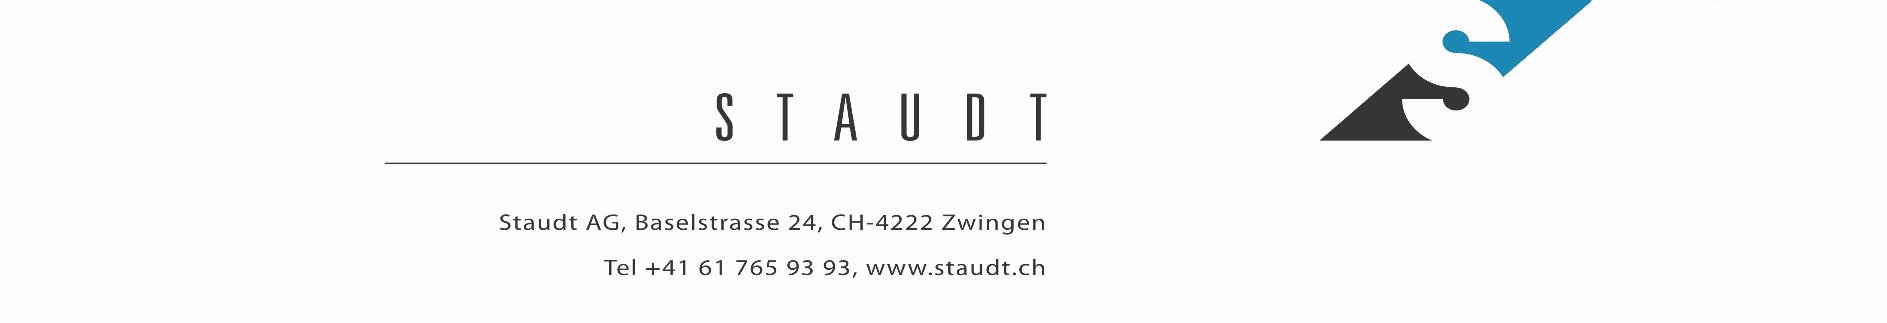 Staudt AG Logo